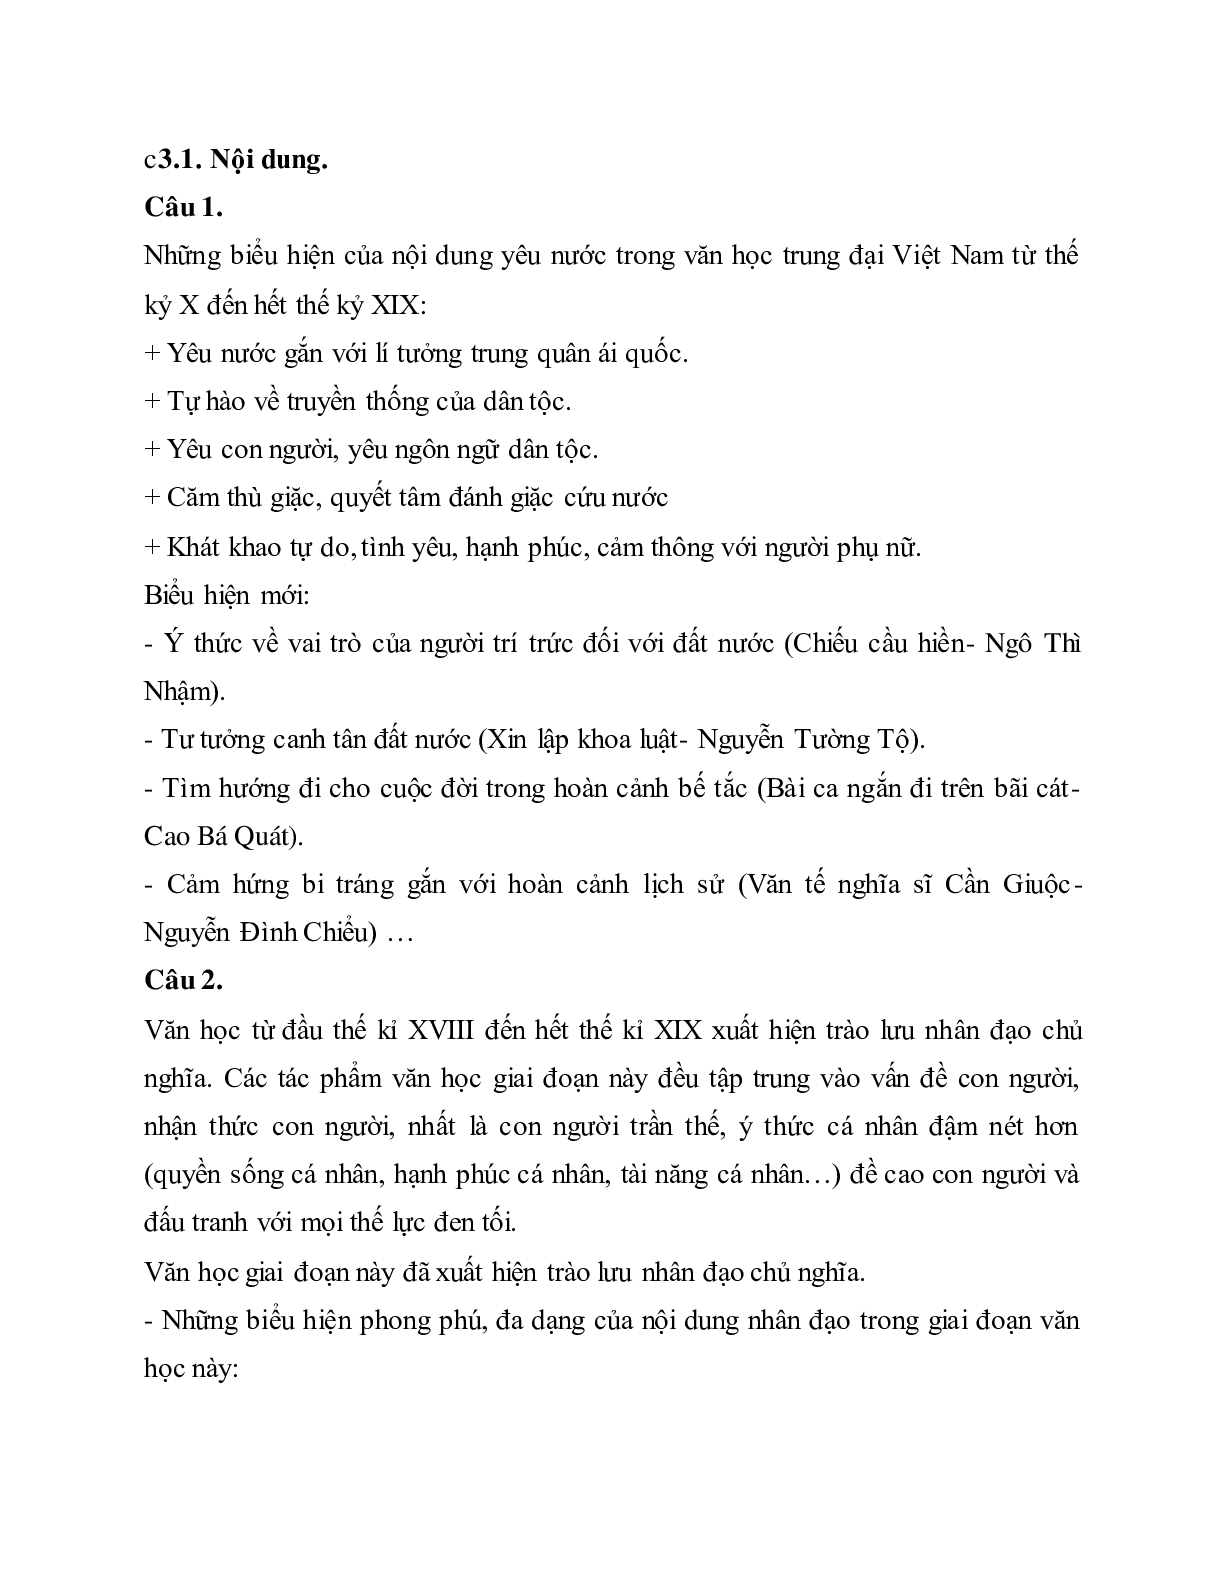 Soạn bài Ôn tập văn học trung đại Việt Nam - ngắn nhất Soạn văn 11 (trang 10)